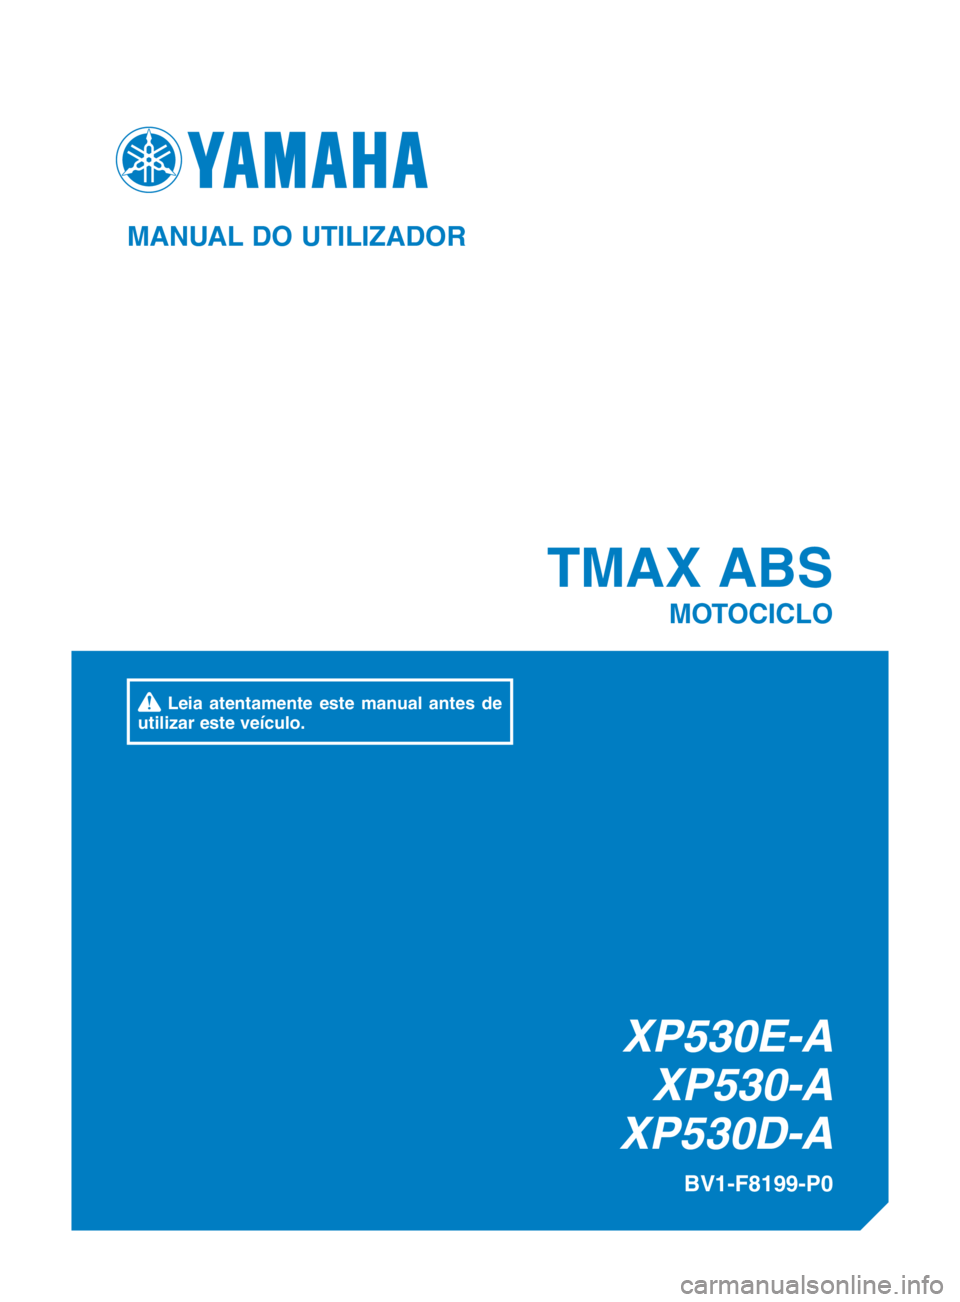 YAMAHA TMAX 2017  Manual de utilização (in Portuguese) XP530E-AXP530-A
XP530D-A
TMAX ABS
MOTOCICLO
BV1-F8199-P0
MANUAL DO UTILIZADOR
 Leia atentamente este manual antes de 
utilizar este veículo.
BV1-F8199-P0_Hyoshi.indd   12016/12/23   16:50:51 